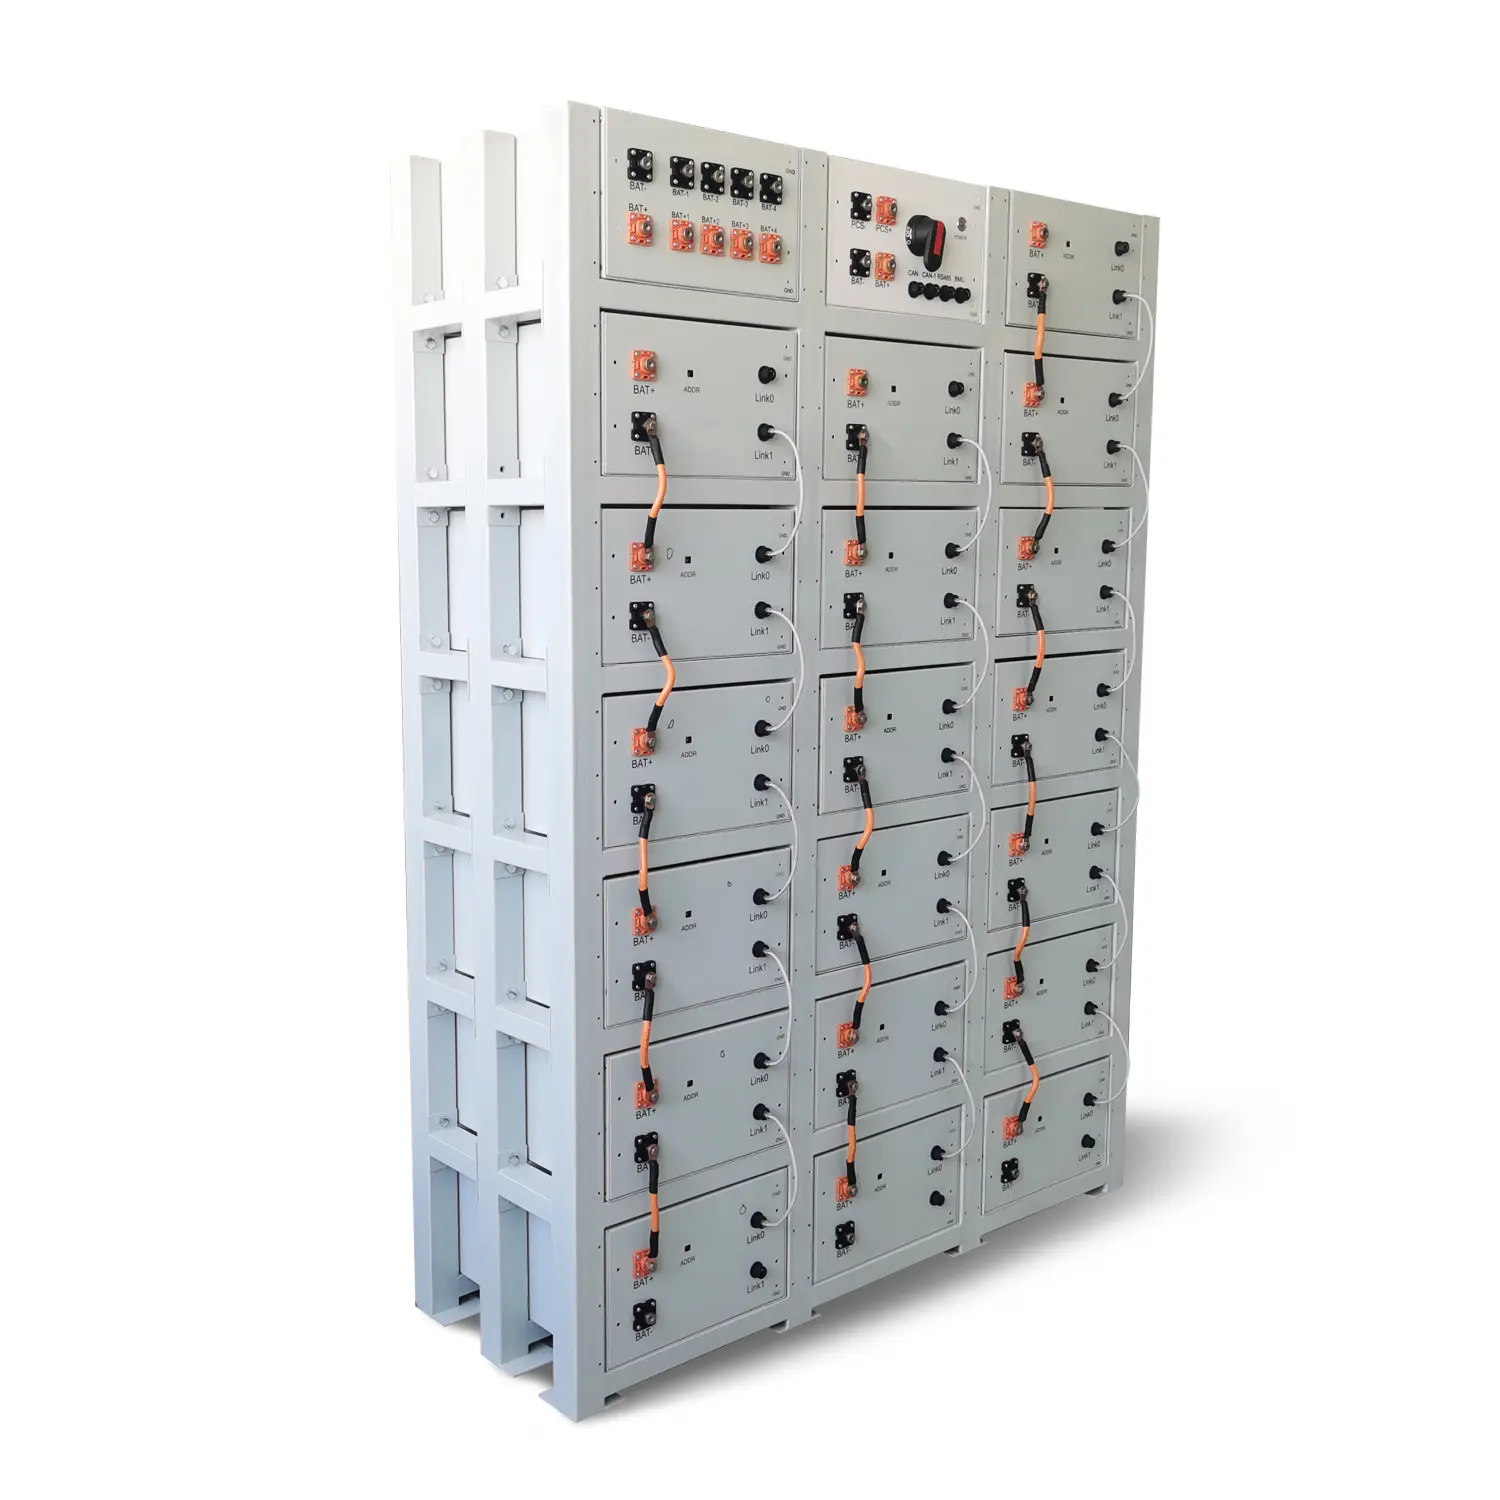 نظام تخزين طاقة ببطارية بقدرة 215 كيلو وات في الساعة من Bess مخصص للمستشفيات الحكومية الصناعية والتجارية